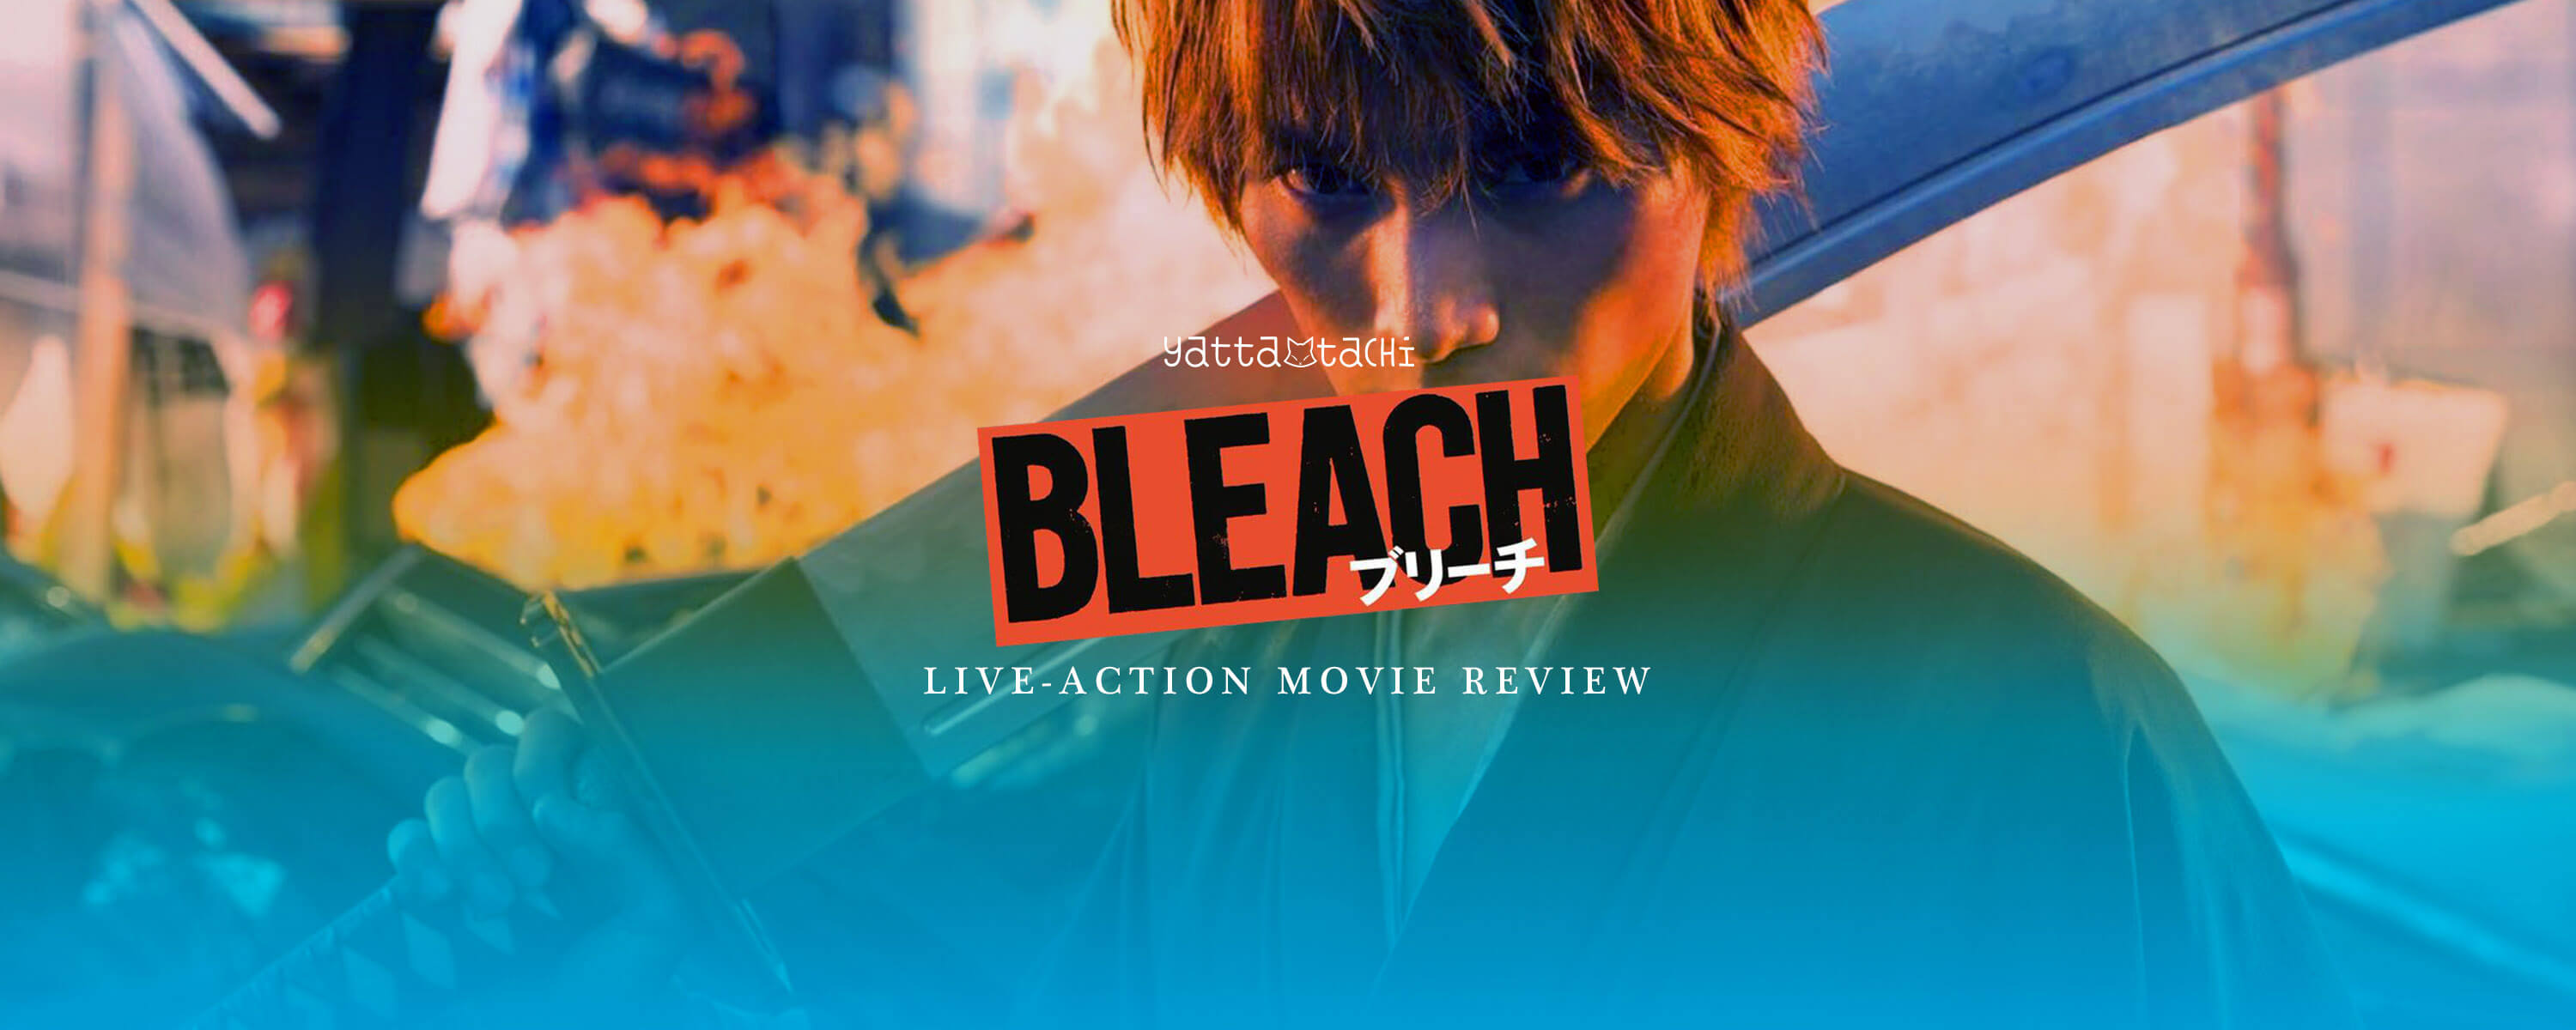 Bleach Online Review